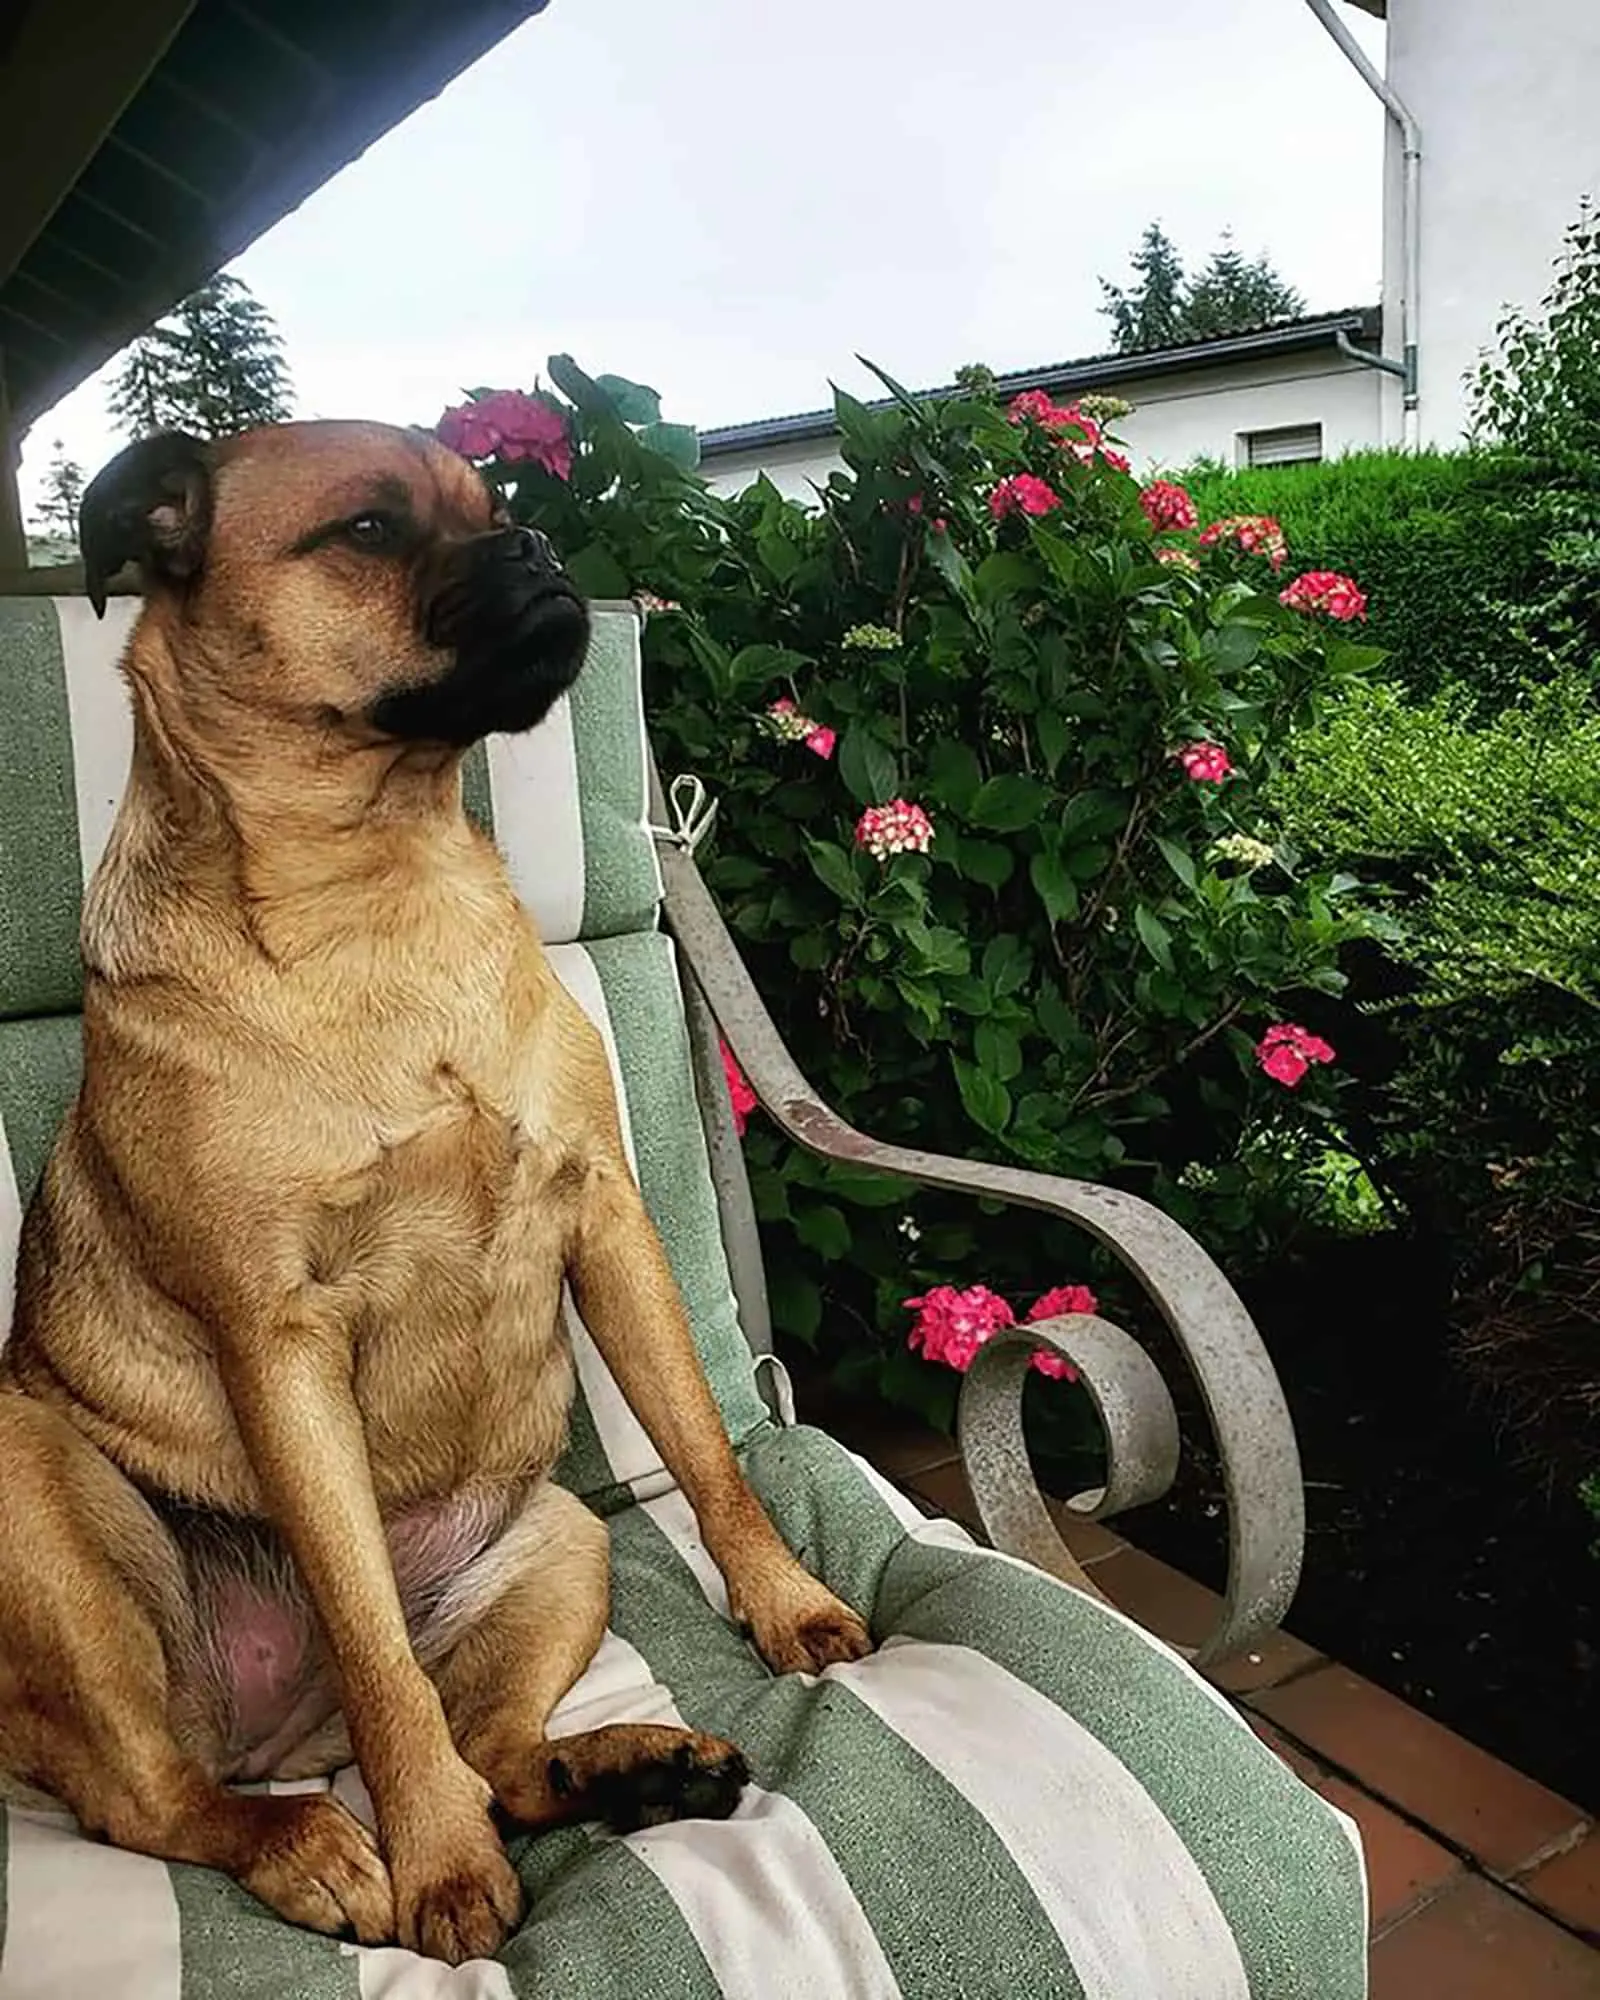 pugweiler sitting on the garden chair